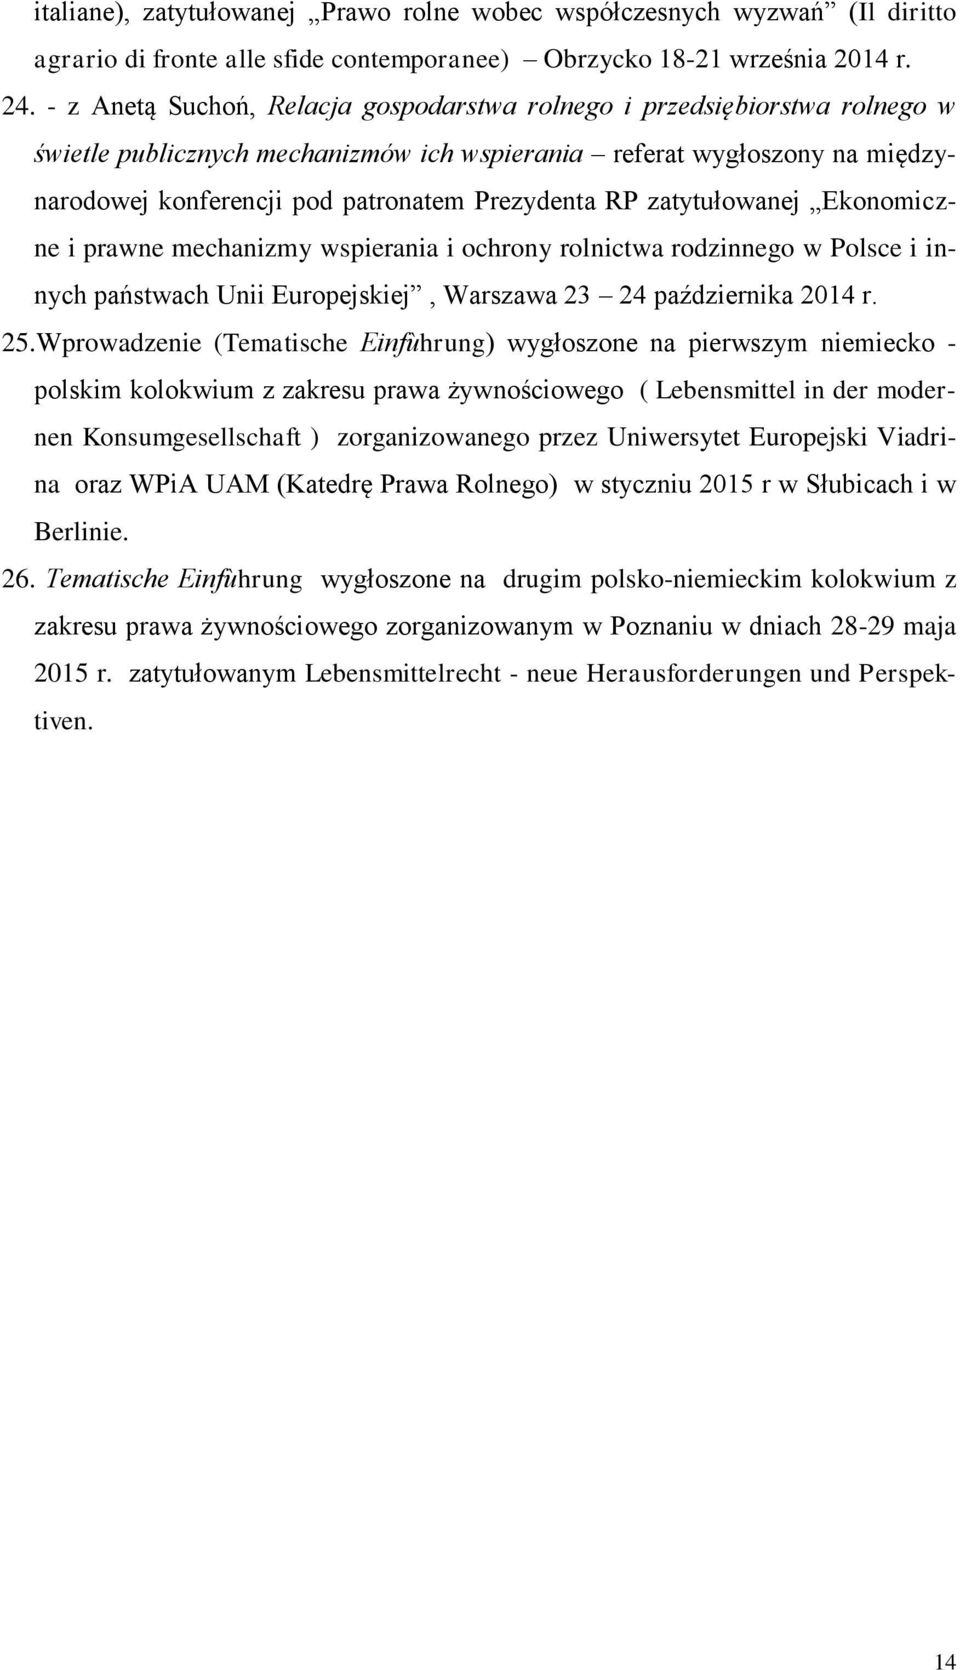 RP zatytułowanej Ekonomiczne i prawne mechanizmy wspierania i ochrony rolnictwa rodzinnego w Polsce i innych państwach Unii Europejskiej, Warszawa 23 24 października 2014 r. 25.